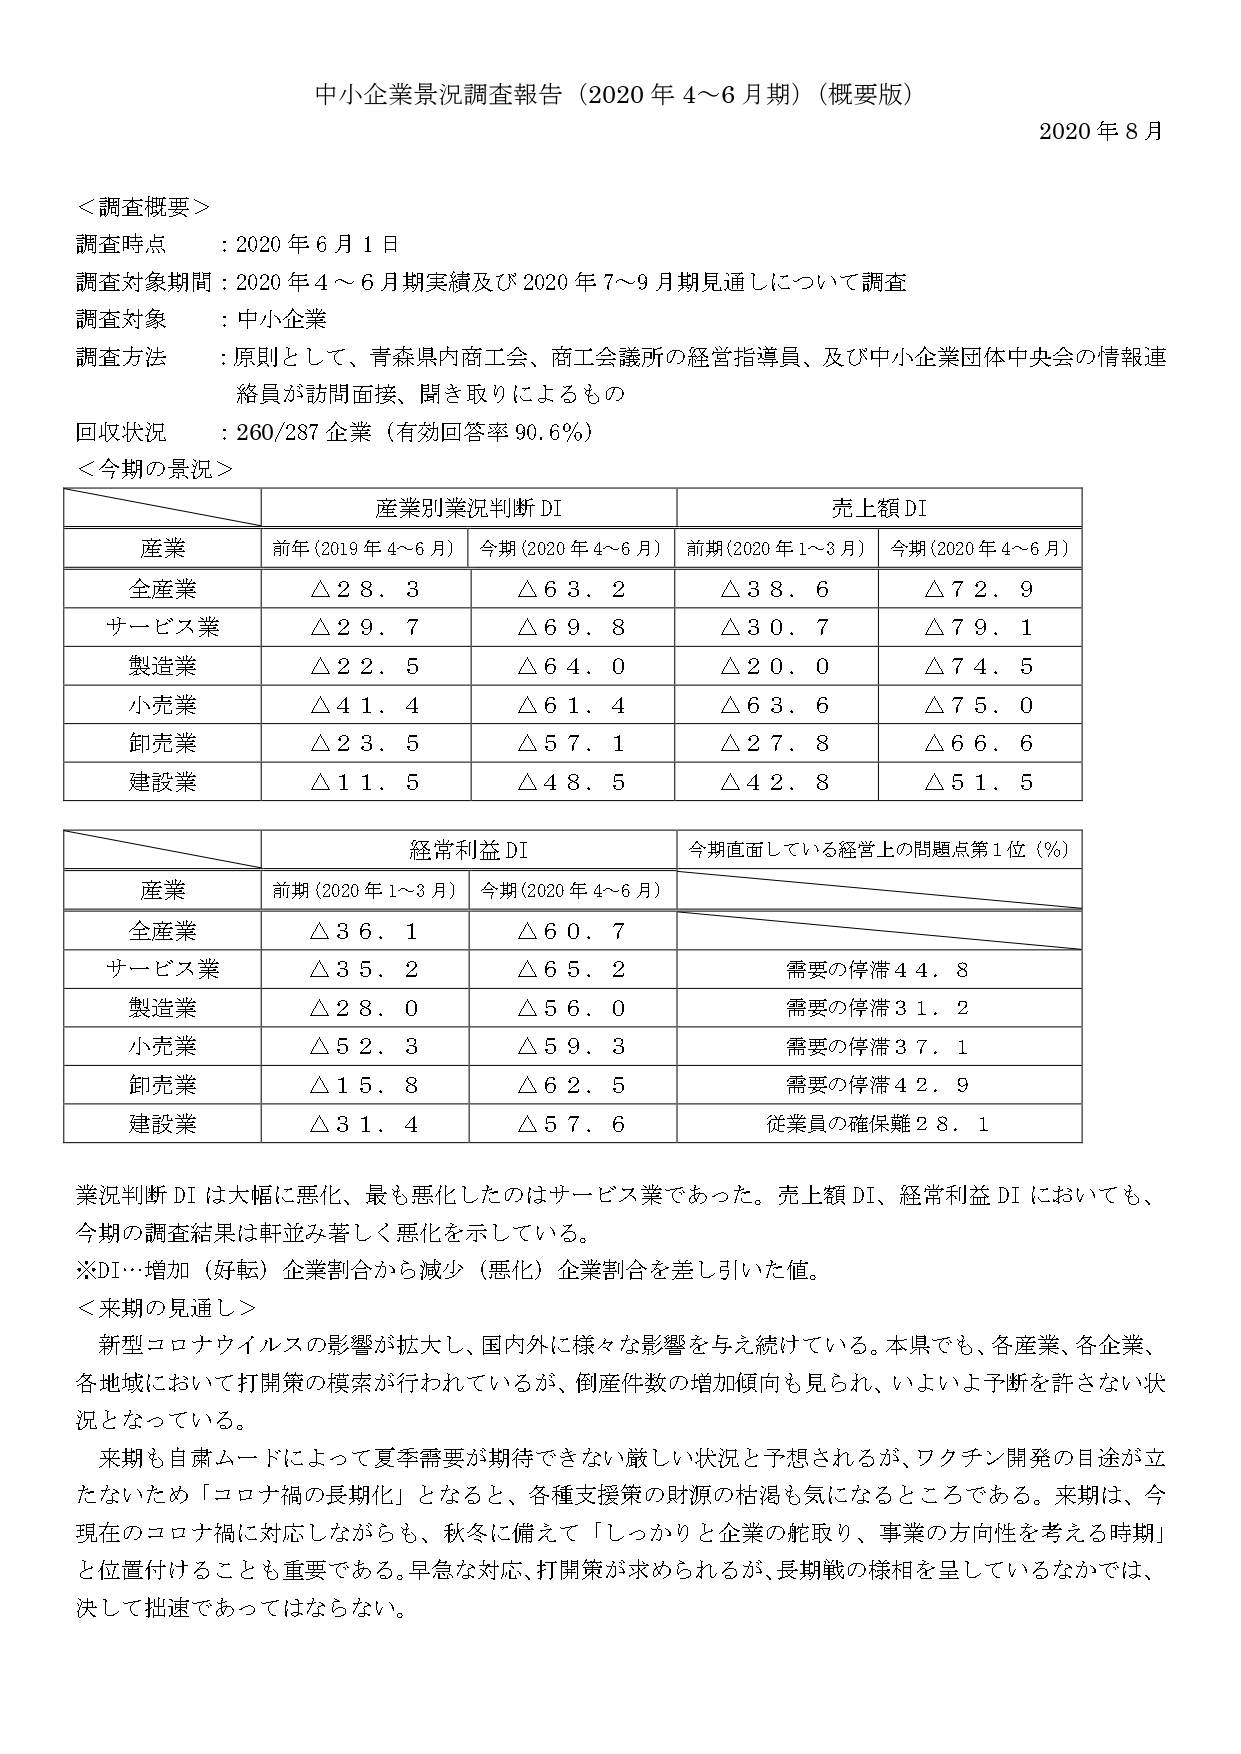 青森県中小企業景況調査報告 令和2年4～6月期についてのお知らせ